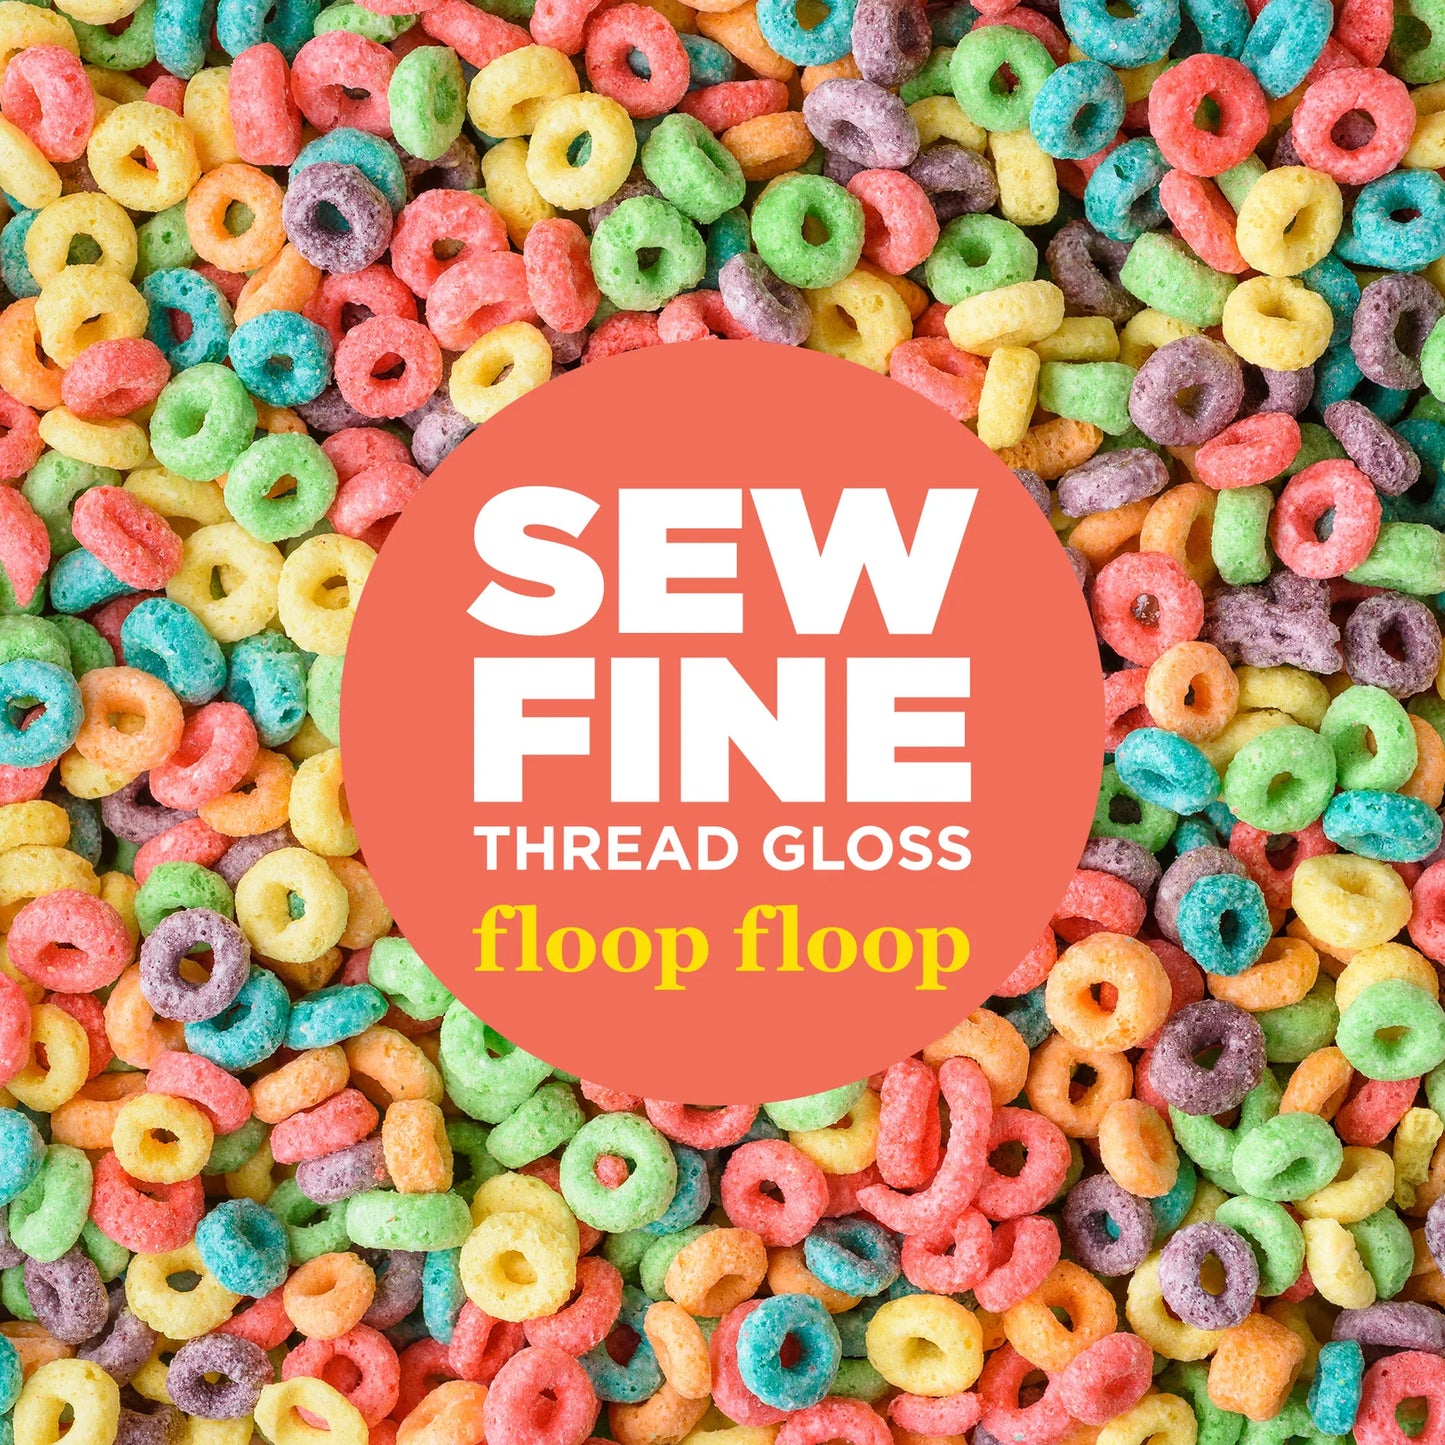 Sew Fine Thread Gloss - Floop Floop